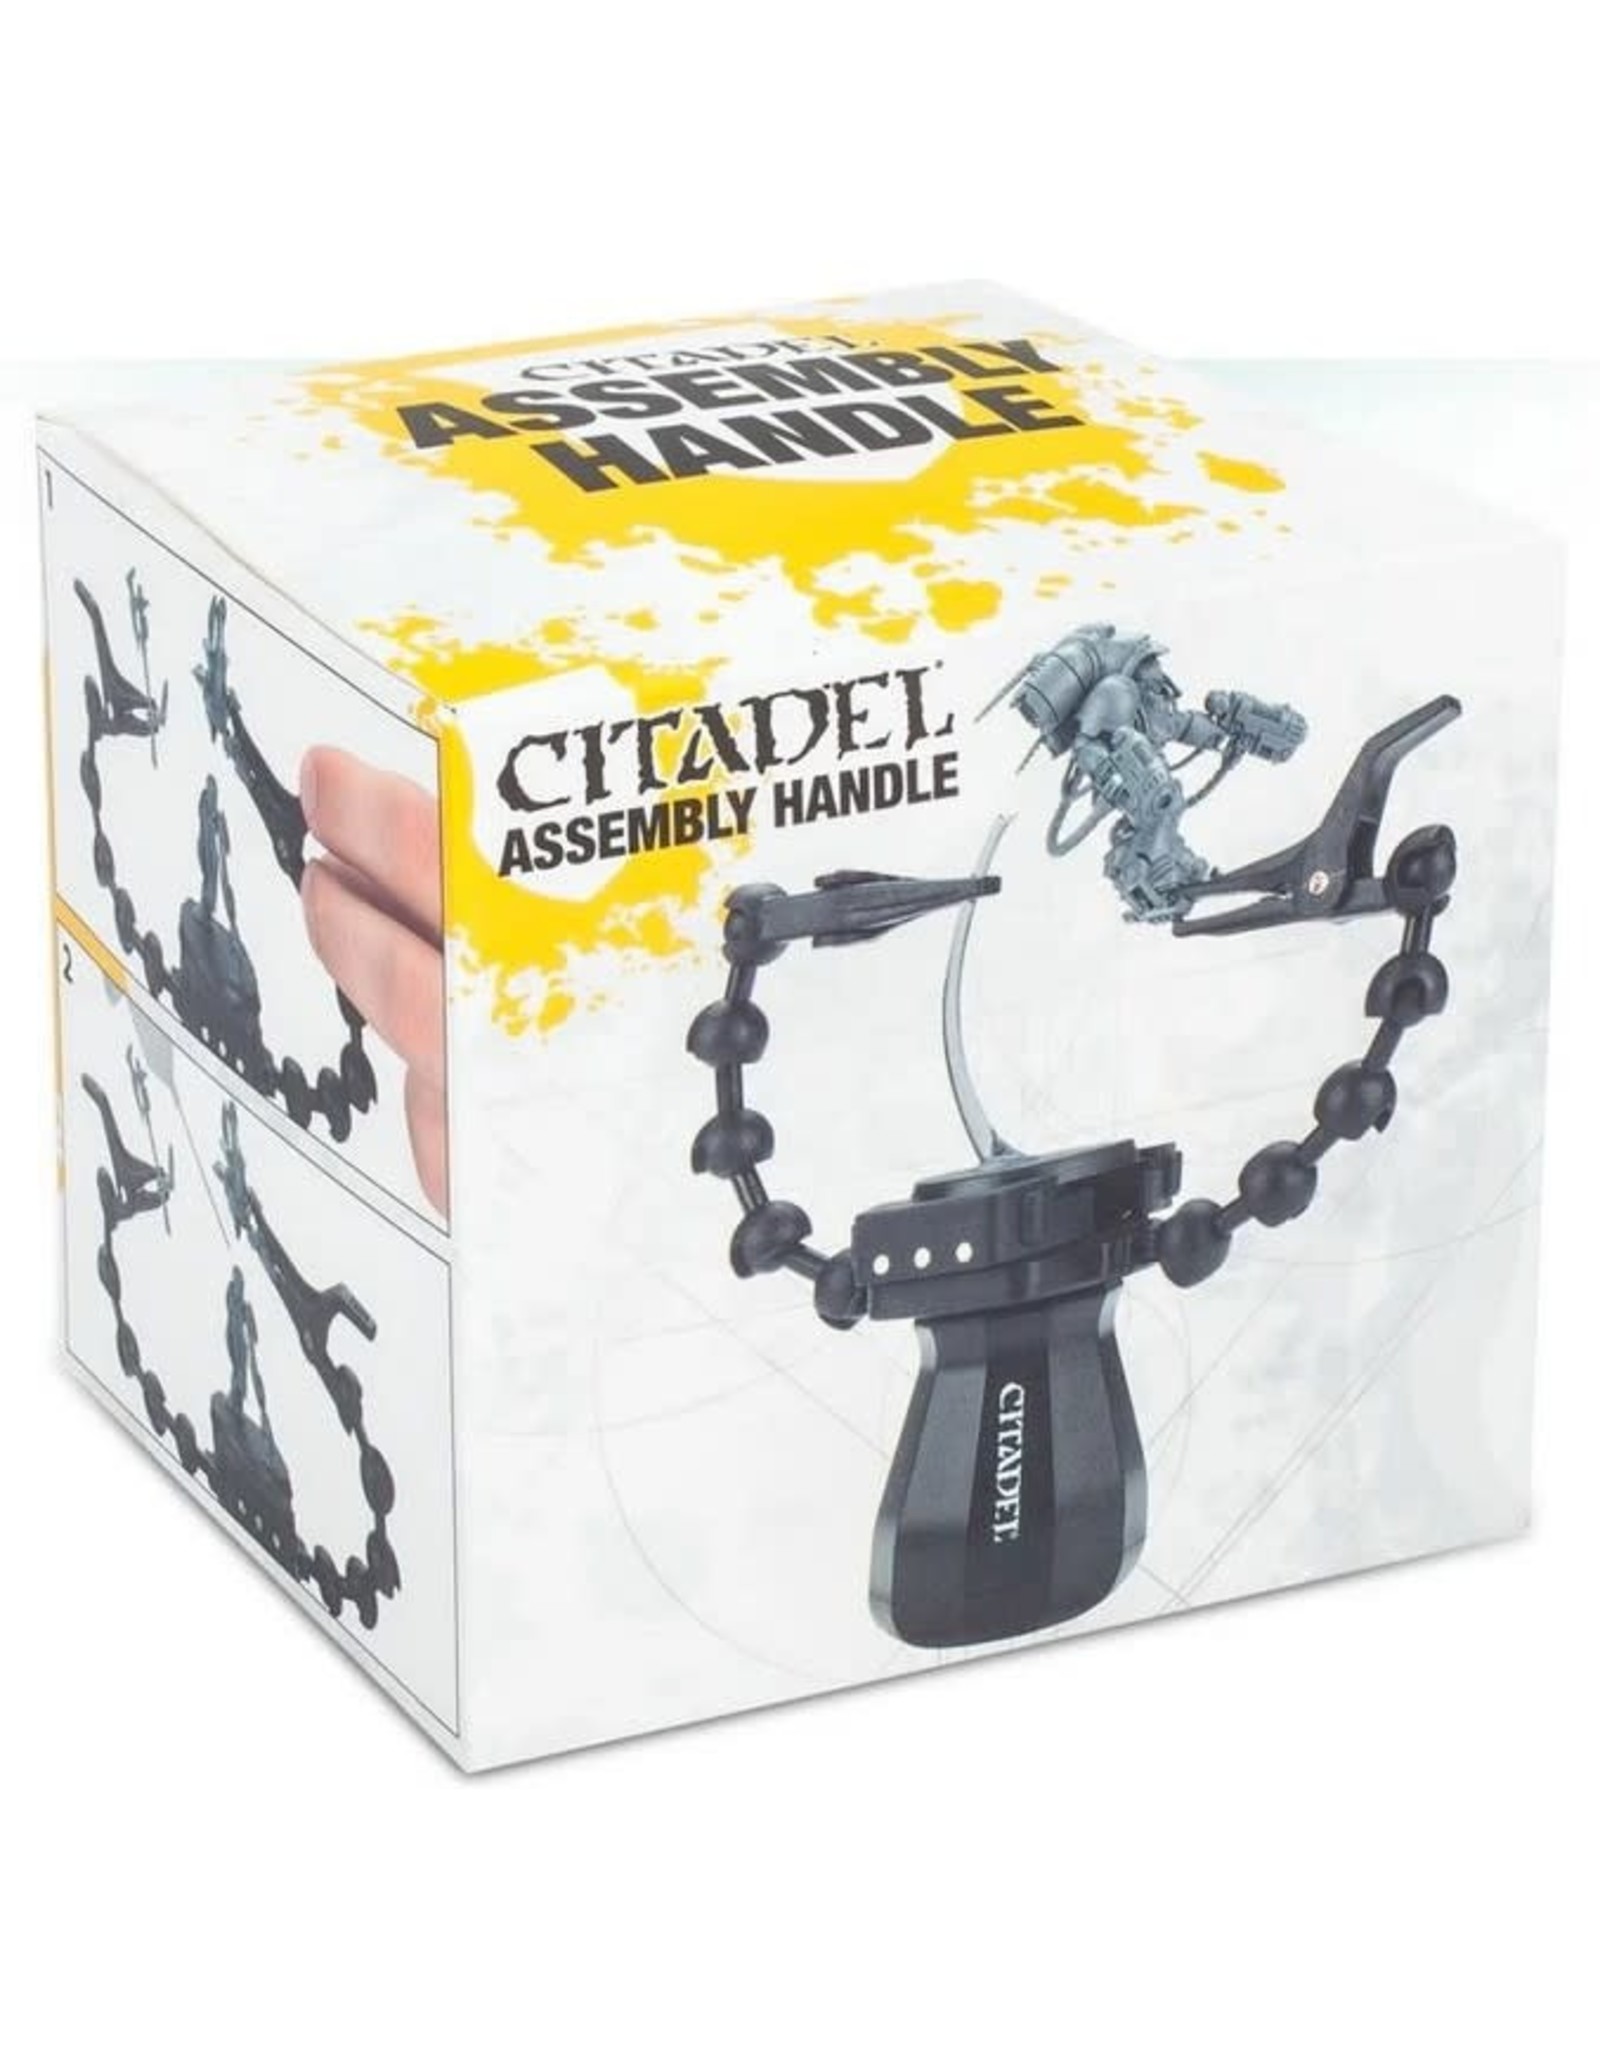 Citadel Citadel Assembly Handle